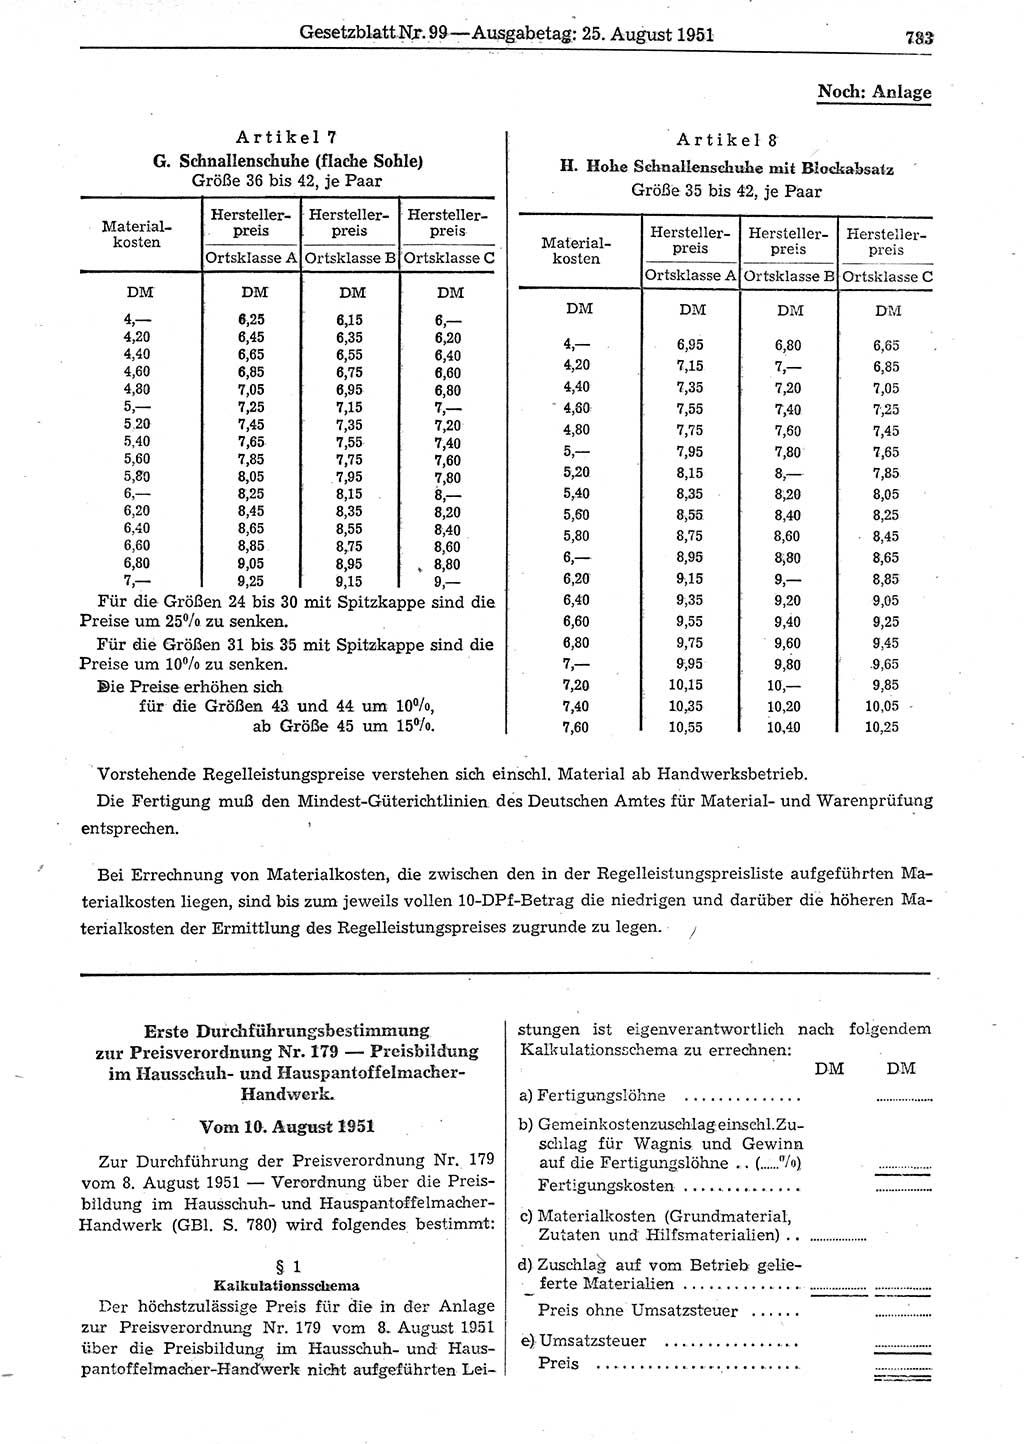 Gesetzblatt (GBl.) der Deutschen Demokratischen Republik (DDR) 1951, Seite 783 (GBl. DDR 1951, S. 783)